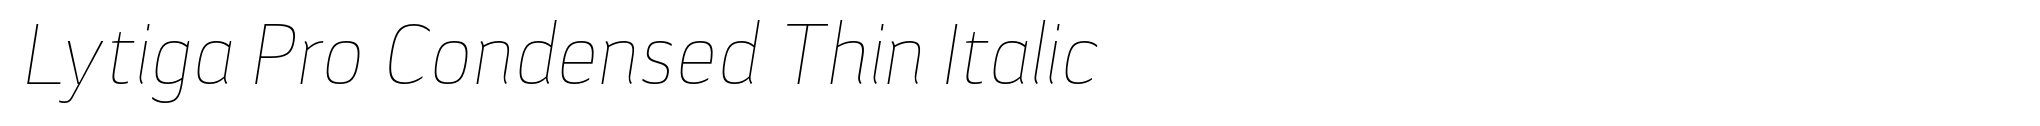 Lytiga Pro Condensed Thin Italic image